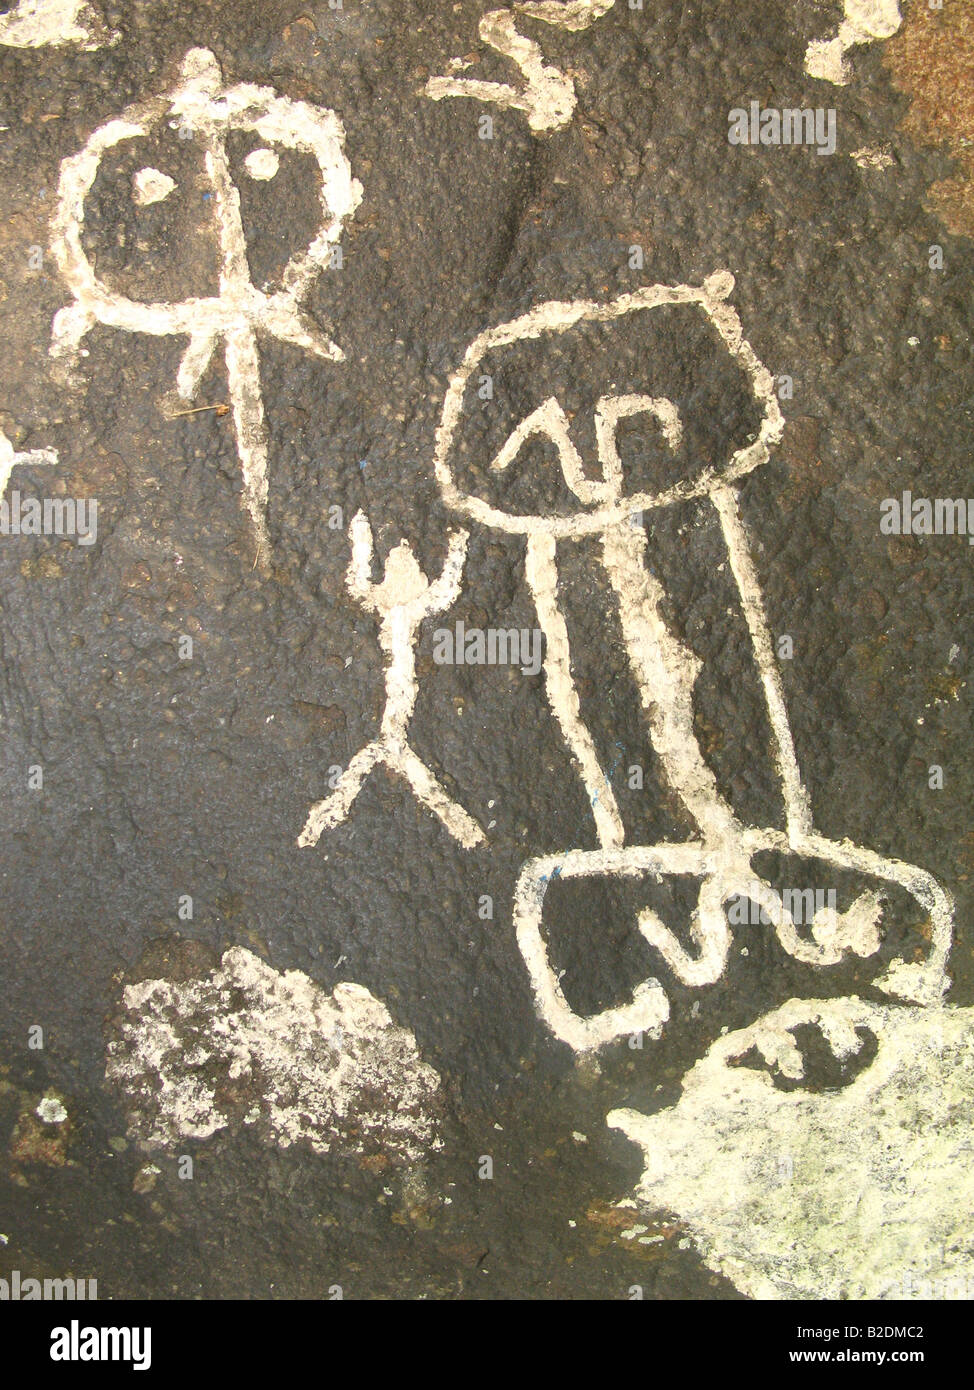 Petroglyphen von Guri, Venezuela. Rupest Kunst. Petroglifos del Guri, Venezuela. Galeria de Arte Nacional, Caracas Stockfoto